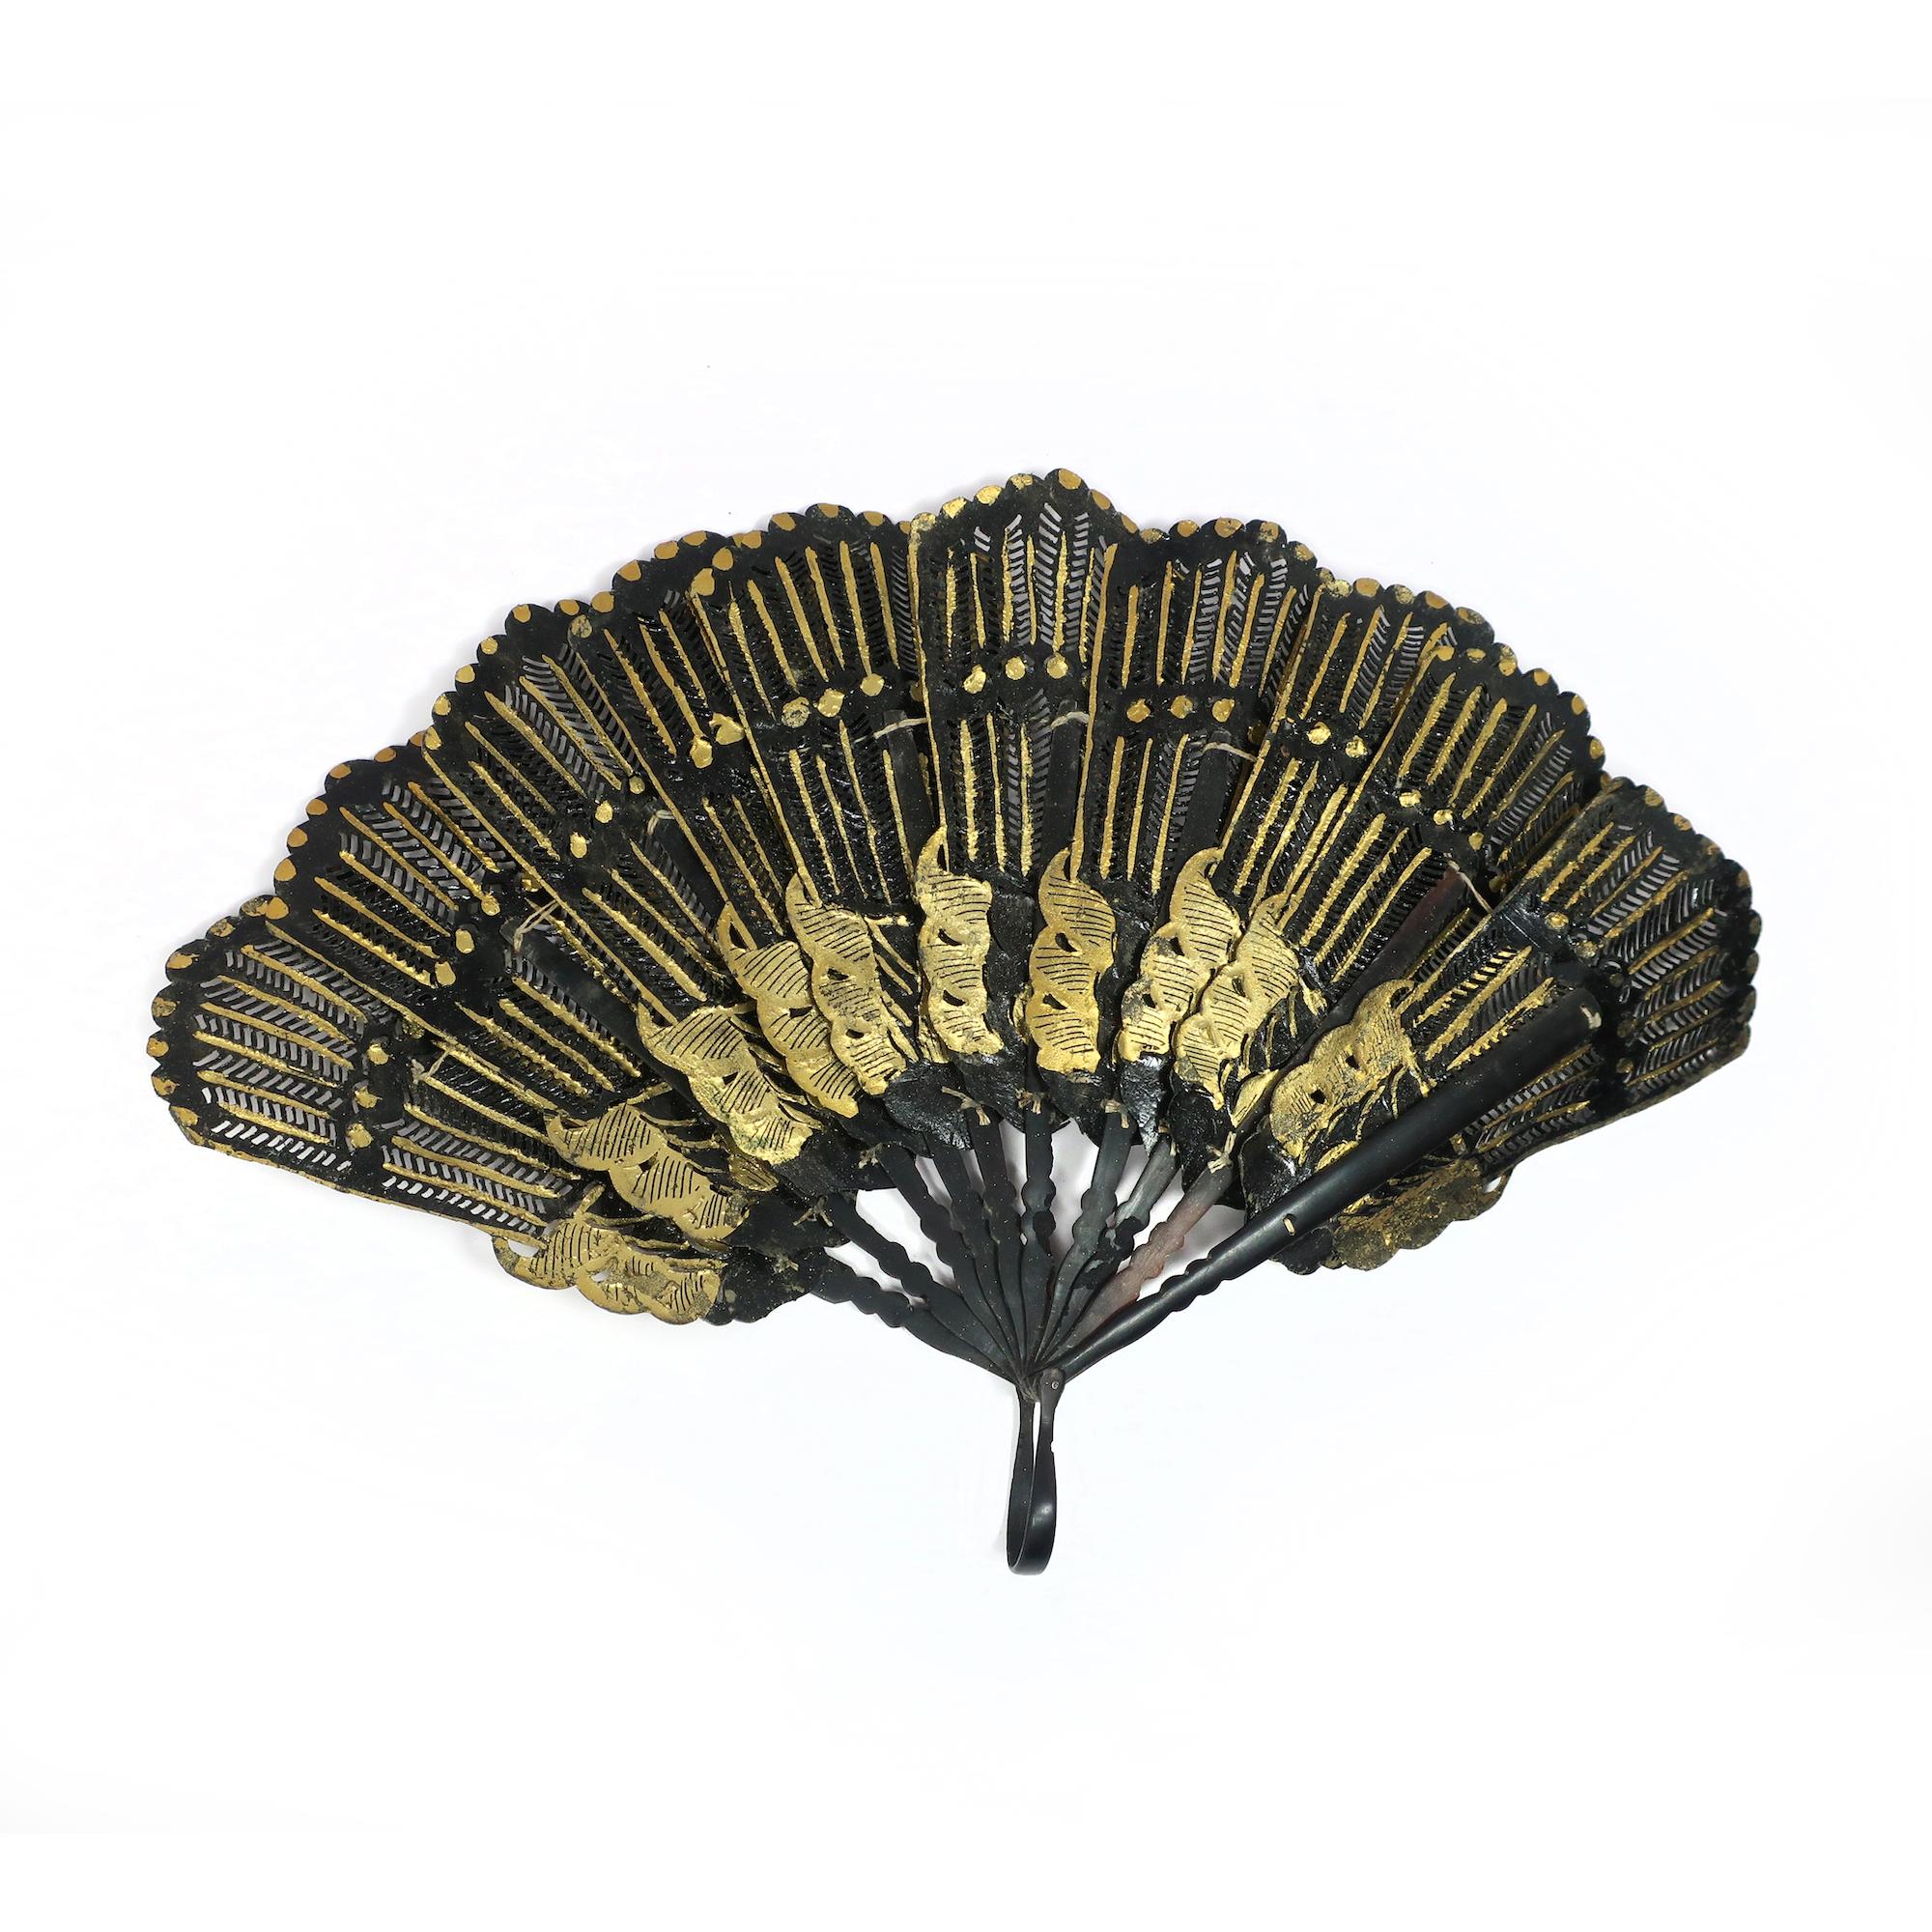 Un superbe et rare exemple d'éventail à main du 19e siècle, en cuir noir et décoré de feuilles d'or. L'éventail est de type brisé, c'est-à-dire qu'il se compose de bâtonnets étroits qui sont reliés au sommet et peuvent être pliés ensemble. Les